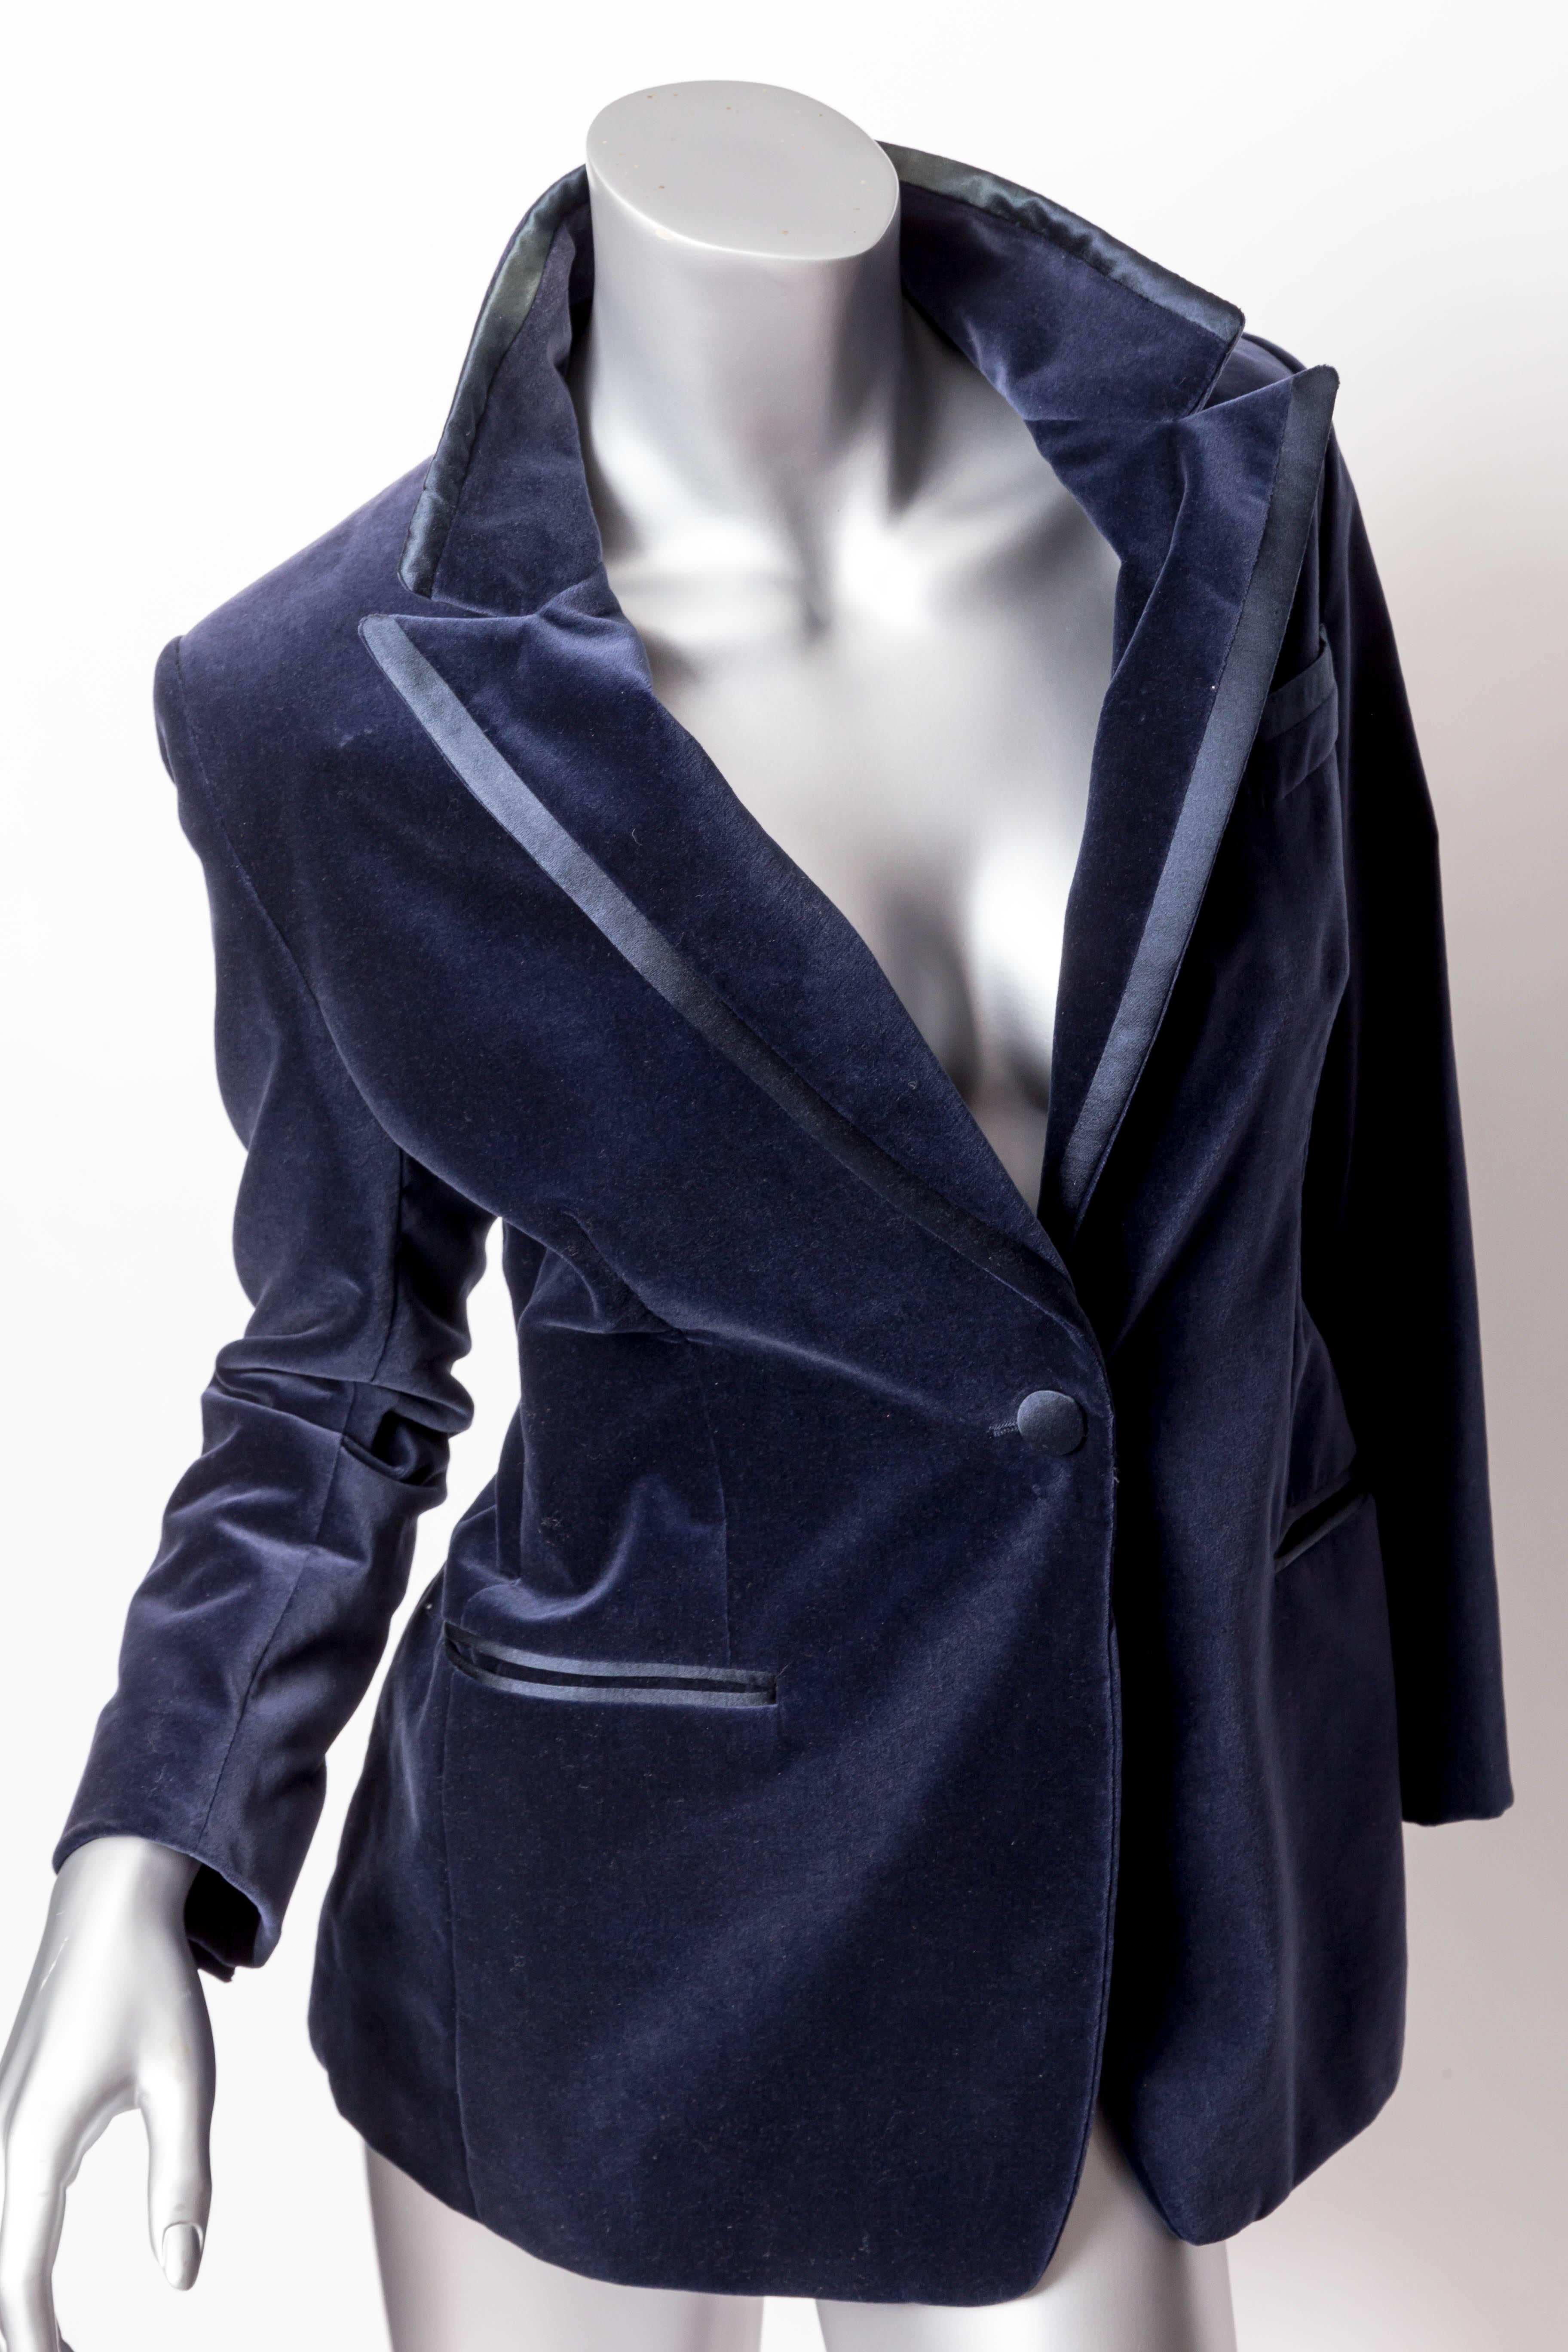 Tom Ford for Gucci Blue Velvet Tuxedo - Size 40 1